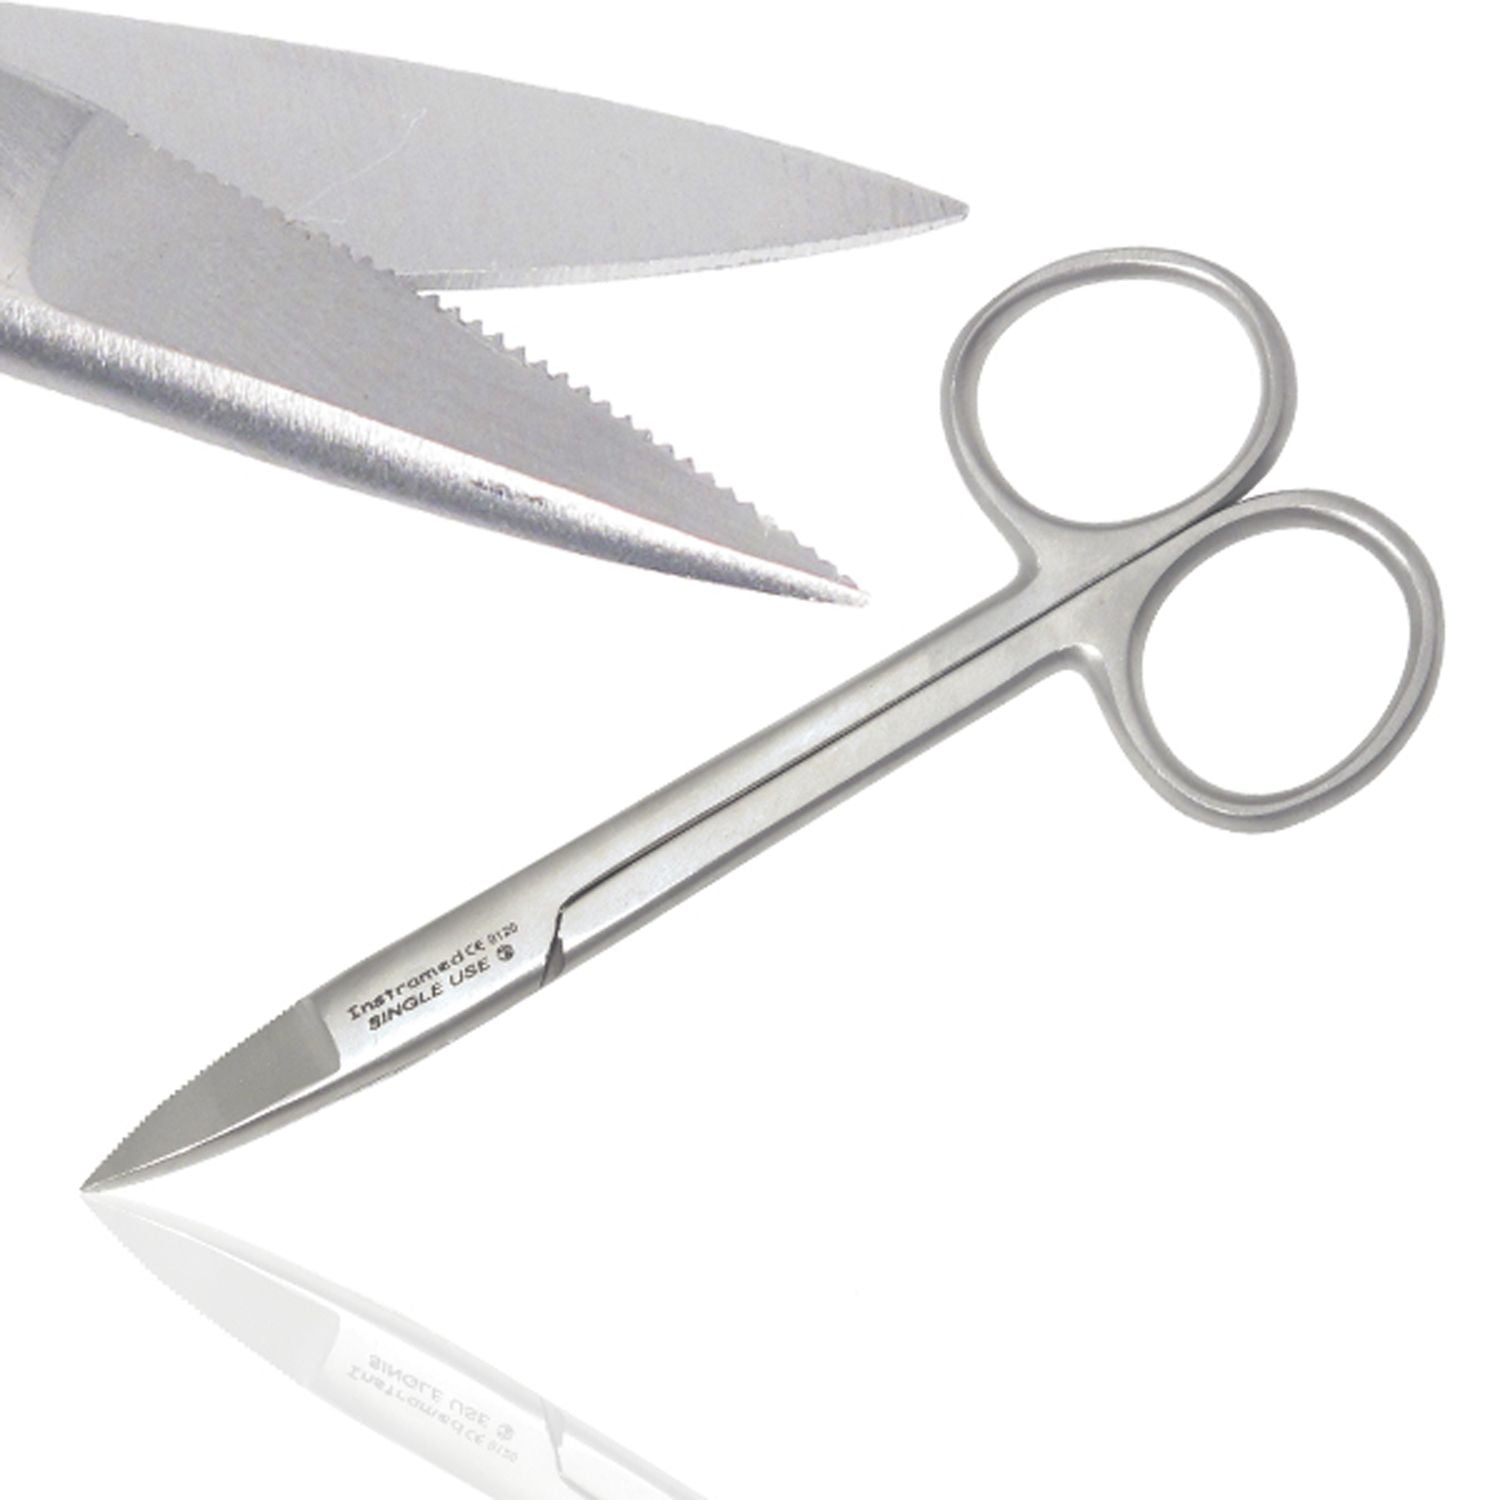 Instramed Toenail Scissors | 12cm | Single